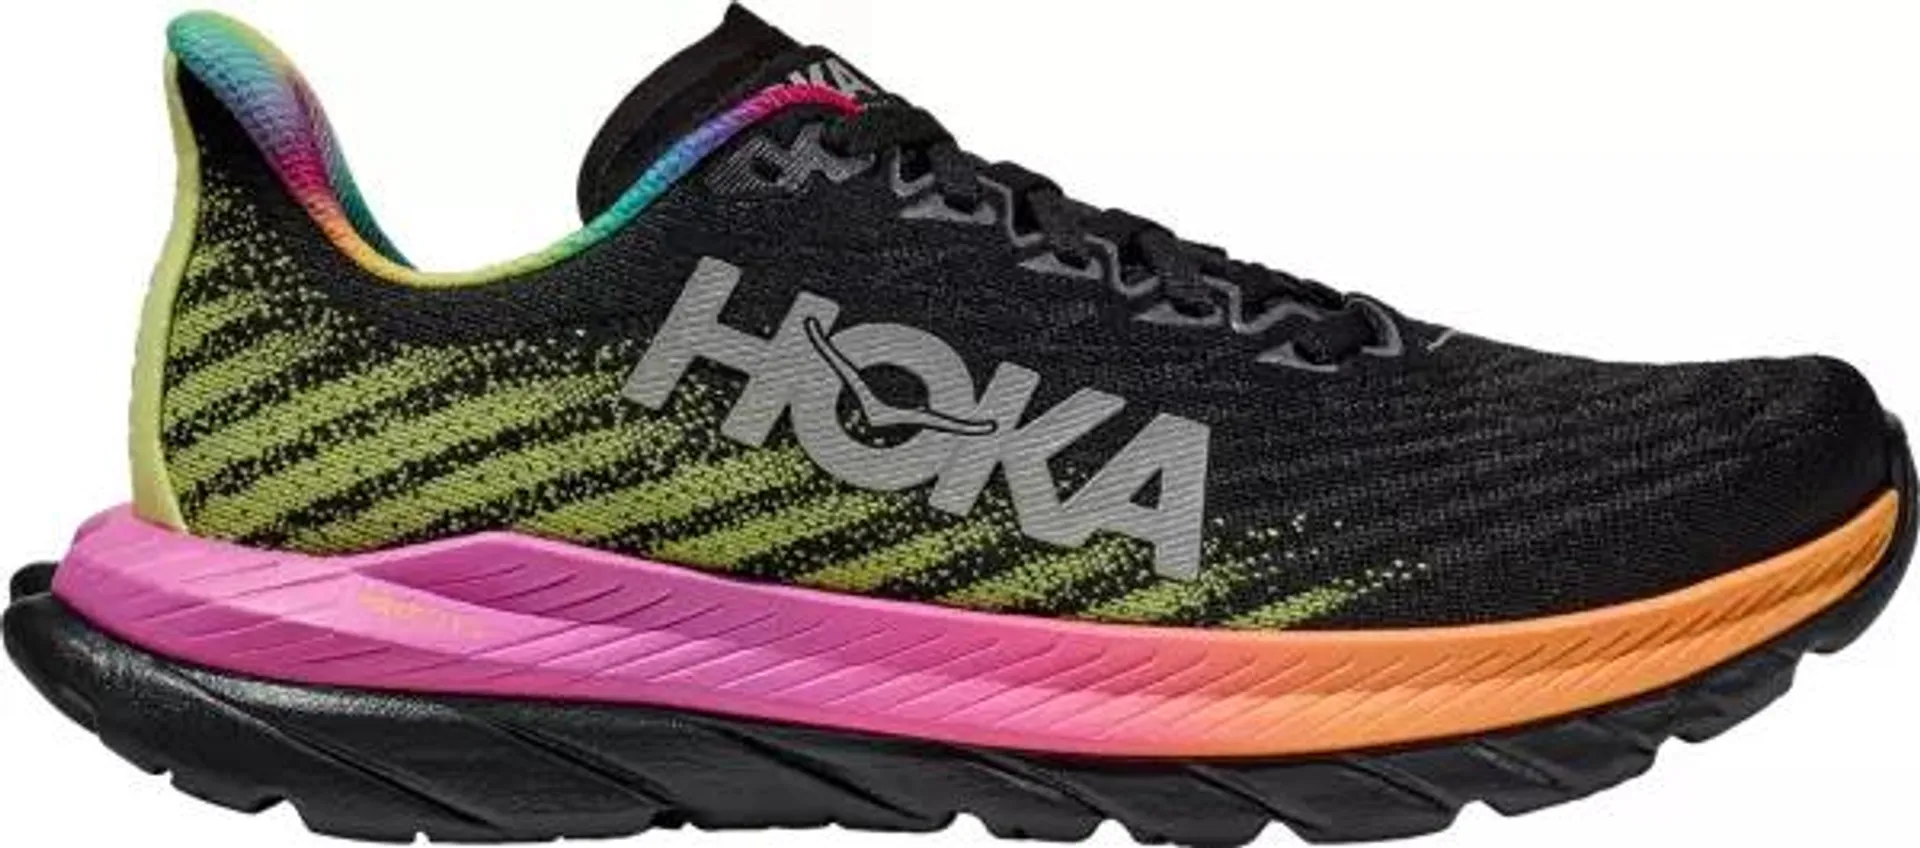 HOKA Women's Mach 5 Running Shoes